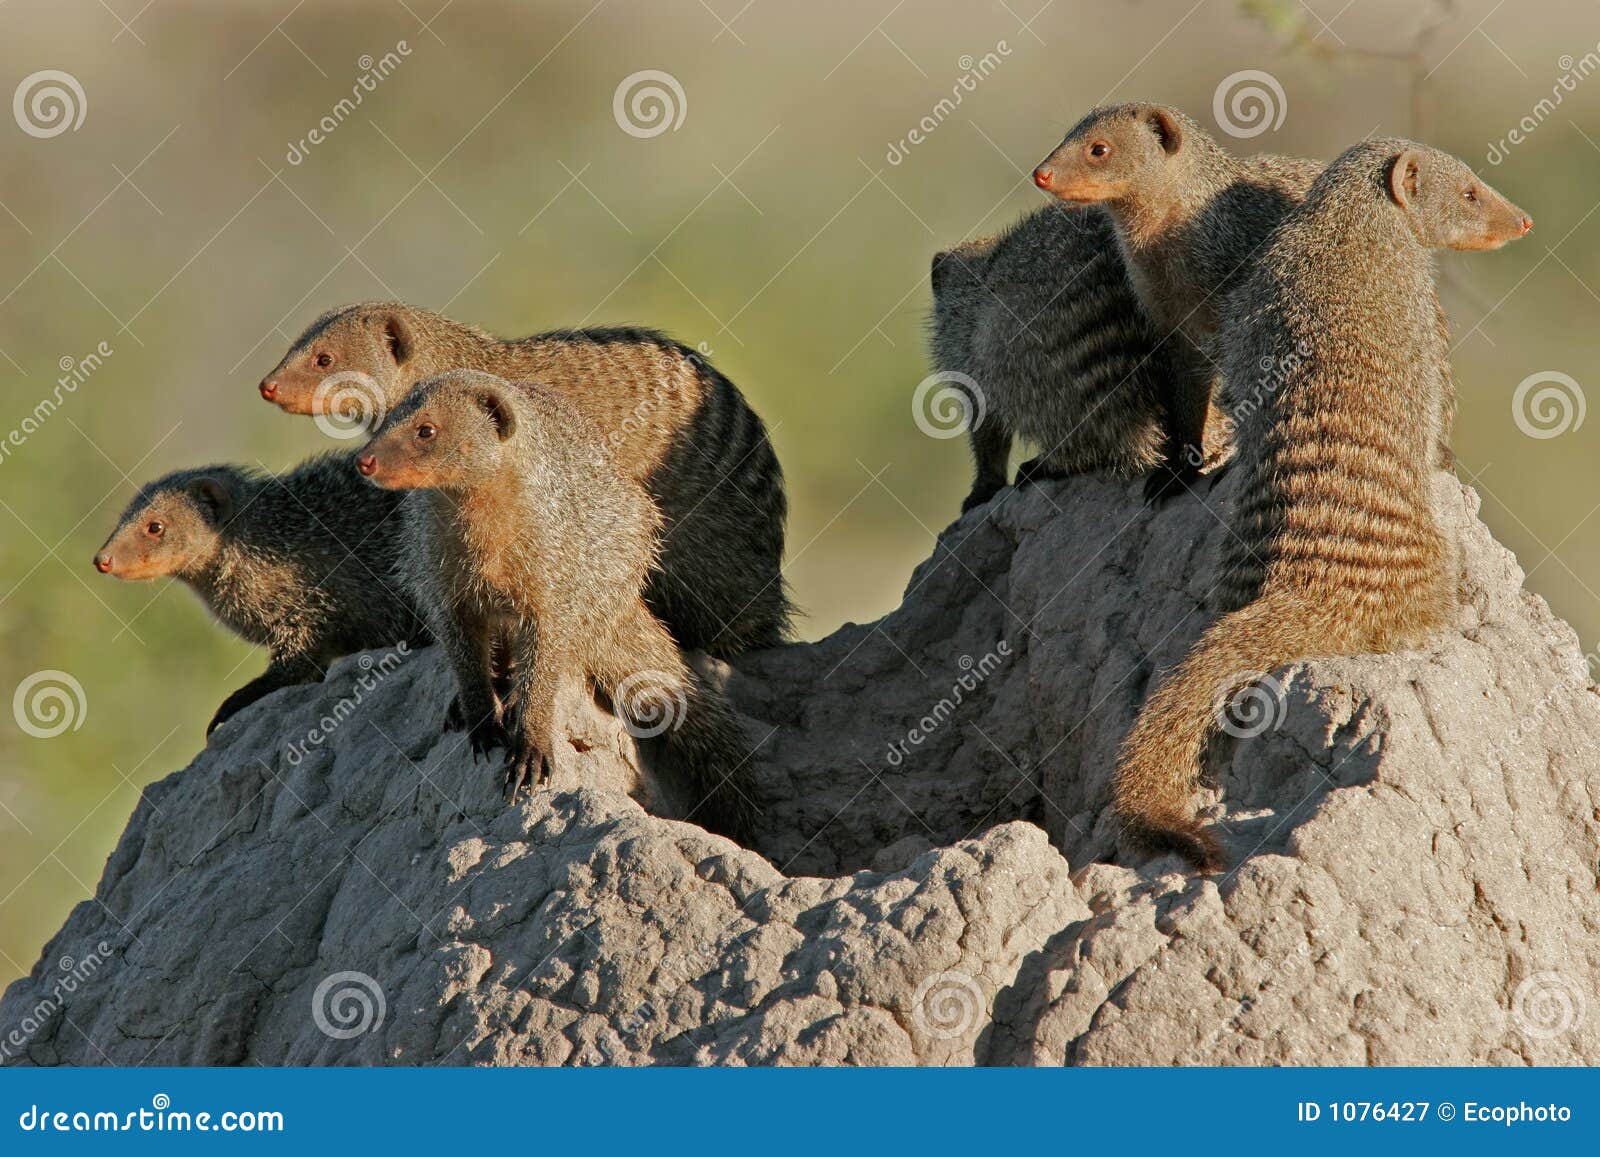 mongoose family, etosha national park, namibia